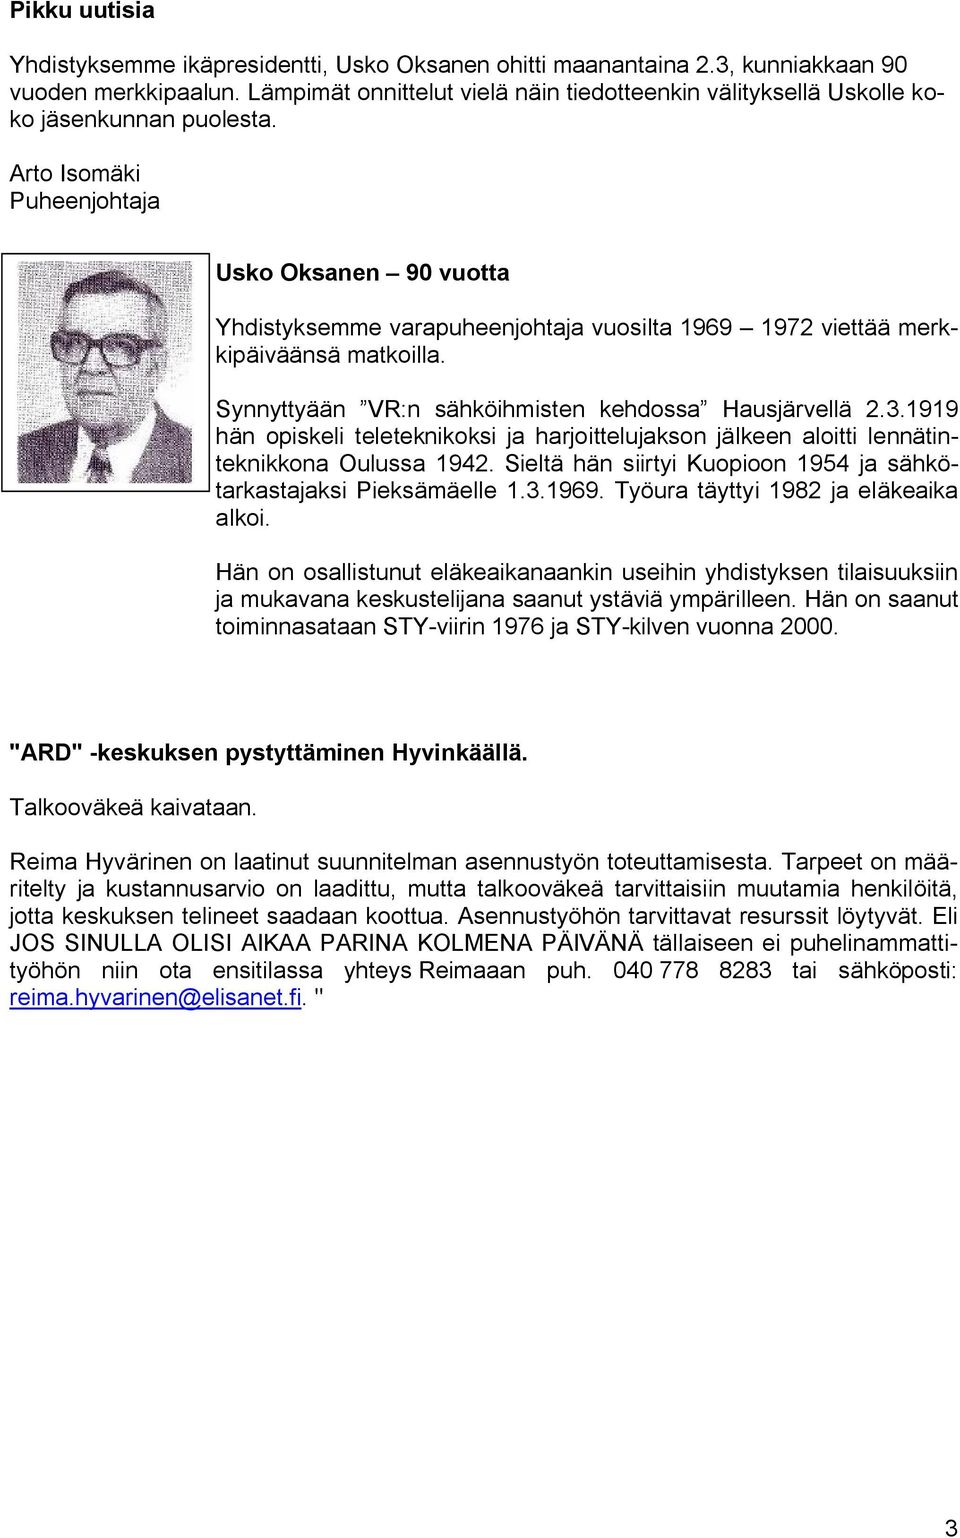 Arto Isomäki Puheenjohtaja Usko Oksanen 90 vuotta Yhdistyksemme varapuheenjohtaja vuosilta 1969 1972 viettää merkkipäiväänsä matkoilla. Synnyttyään VR:n sähköihmisten kehdossa Hausjärvellä 2.3.